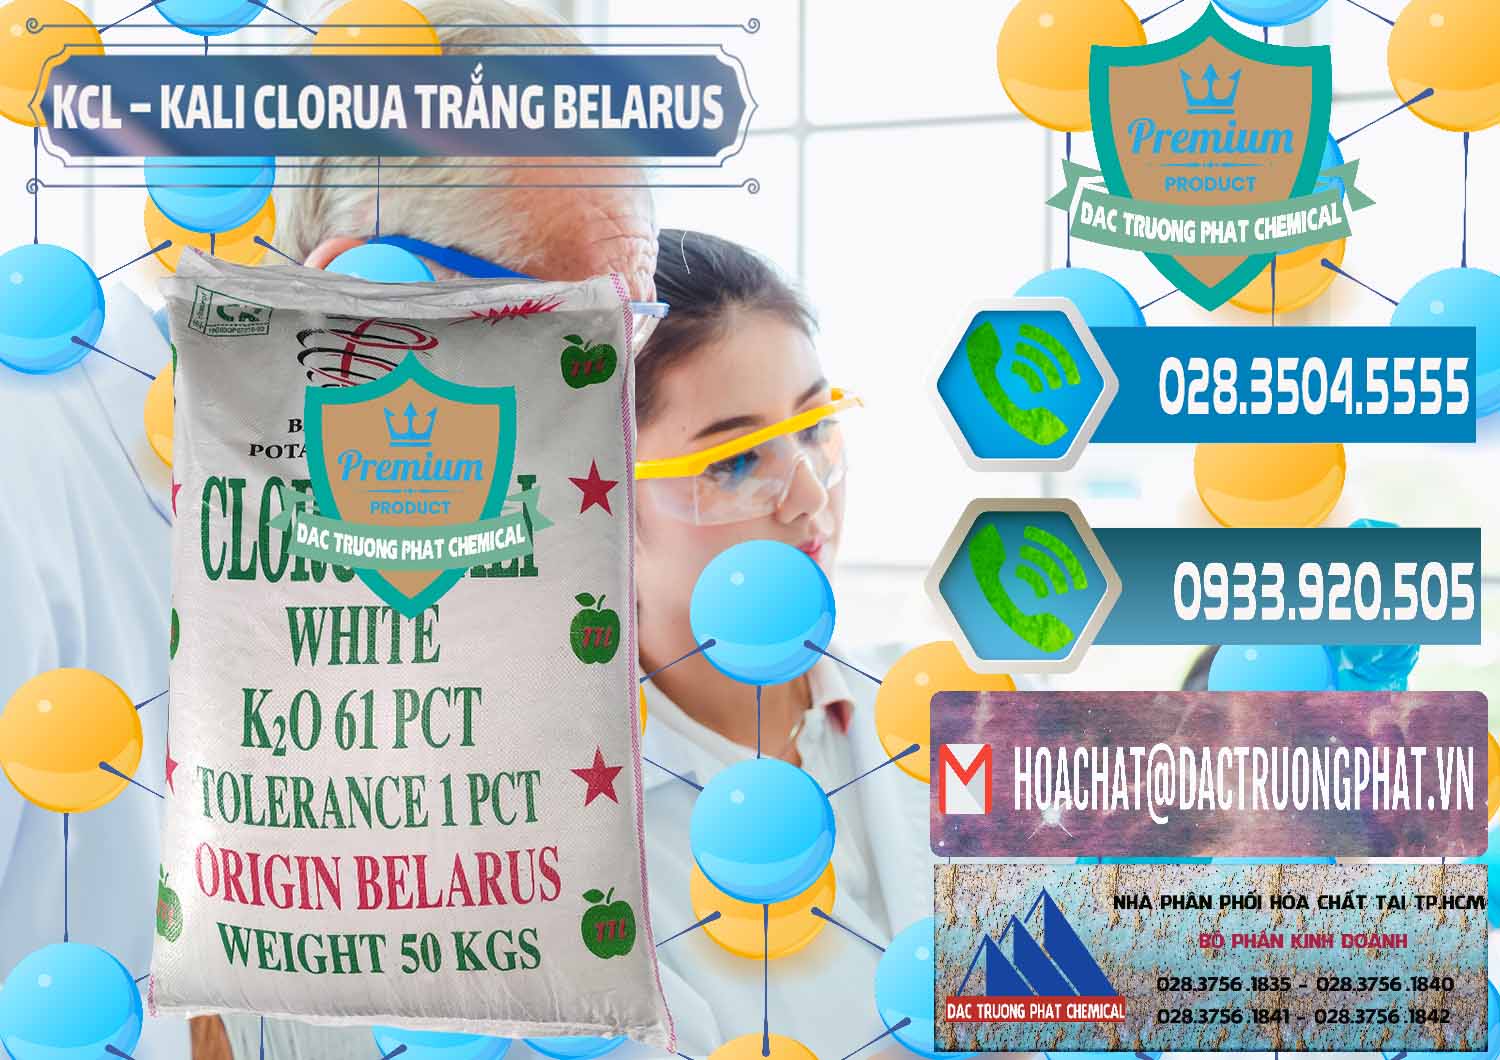 Nơi chuyên bán & phân phối KCL – Kali Clorua Trắng Belarus - 0085 - Cung cấp hóa chất tại TP.HCM - congtyhoachat.net